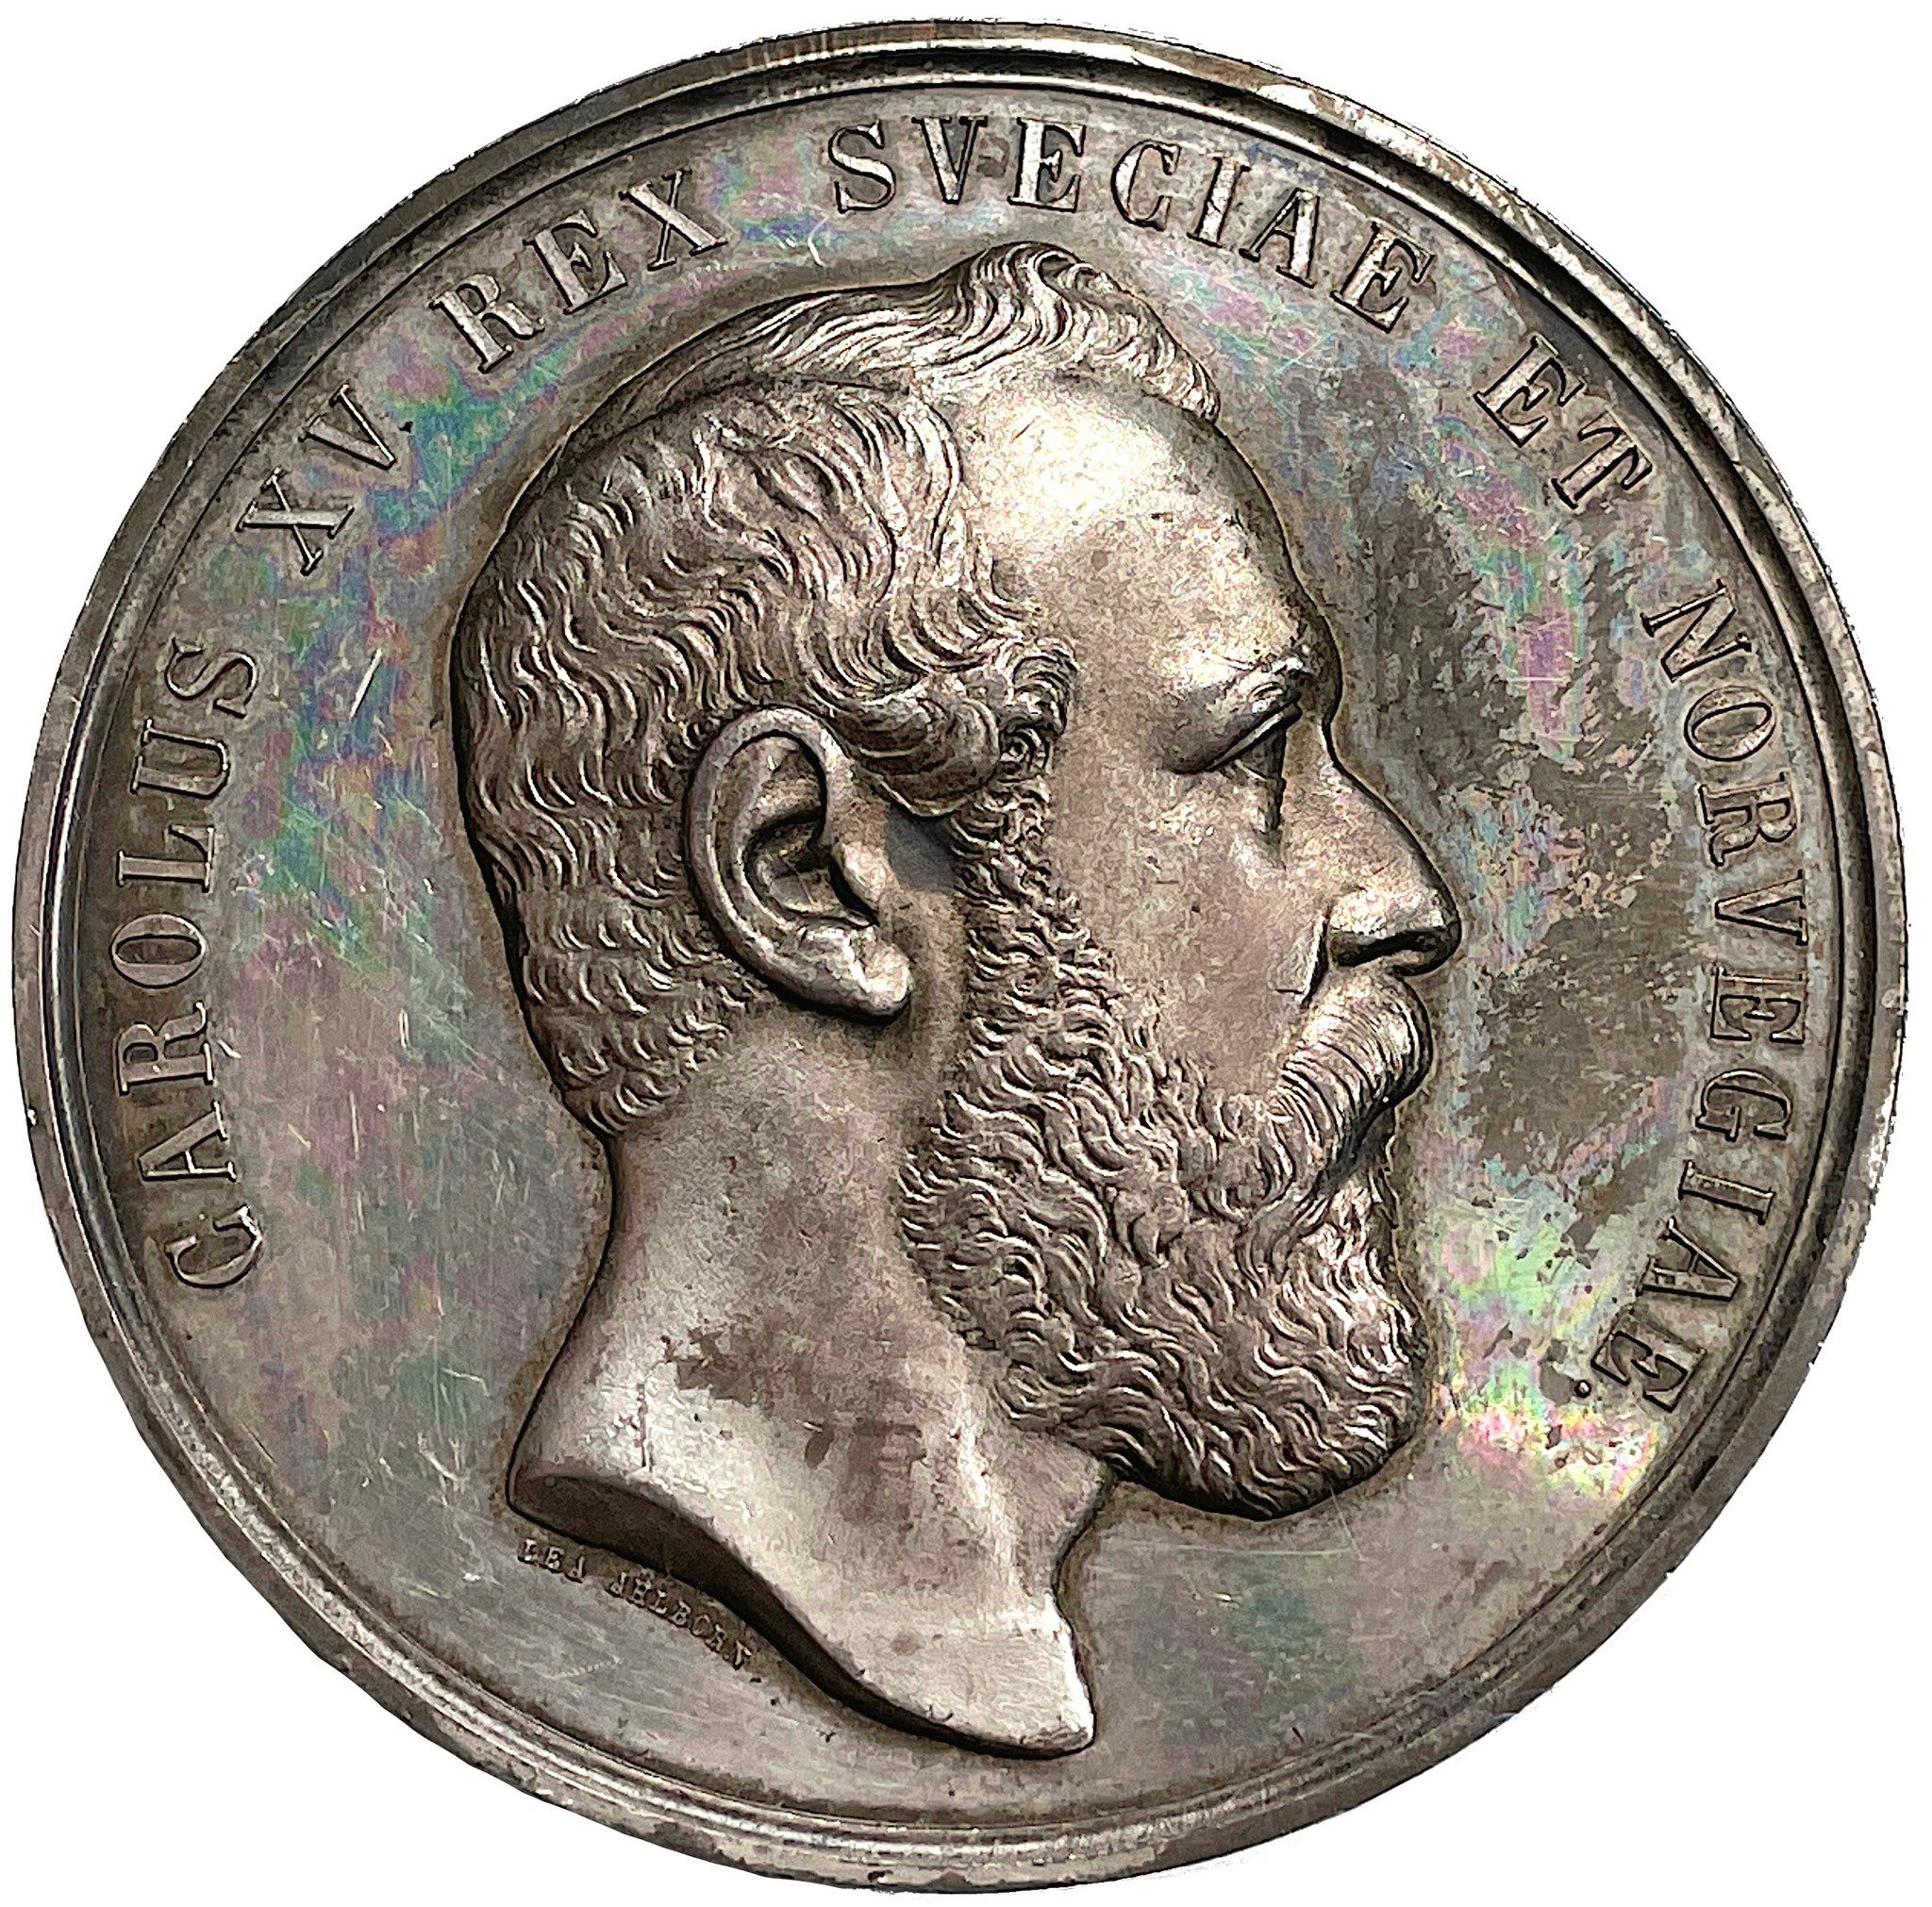 Sverige, Karl XV - Konungens död 1872 - En vacker och pampig silvermedalj av Lea Ahlborn